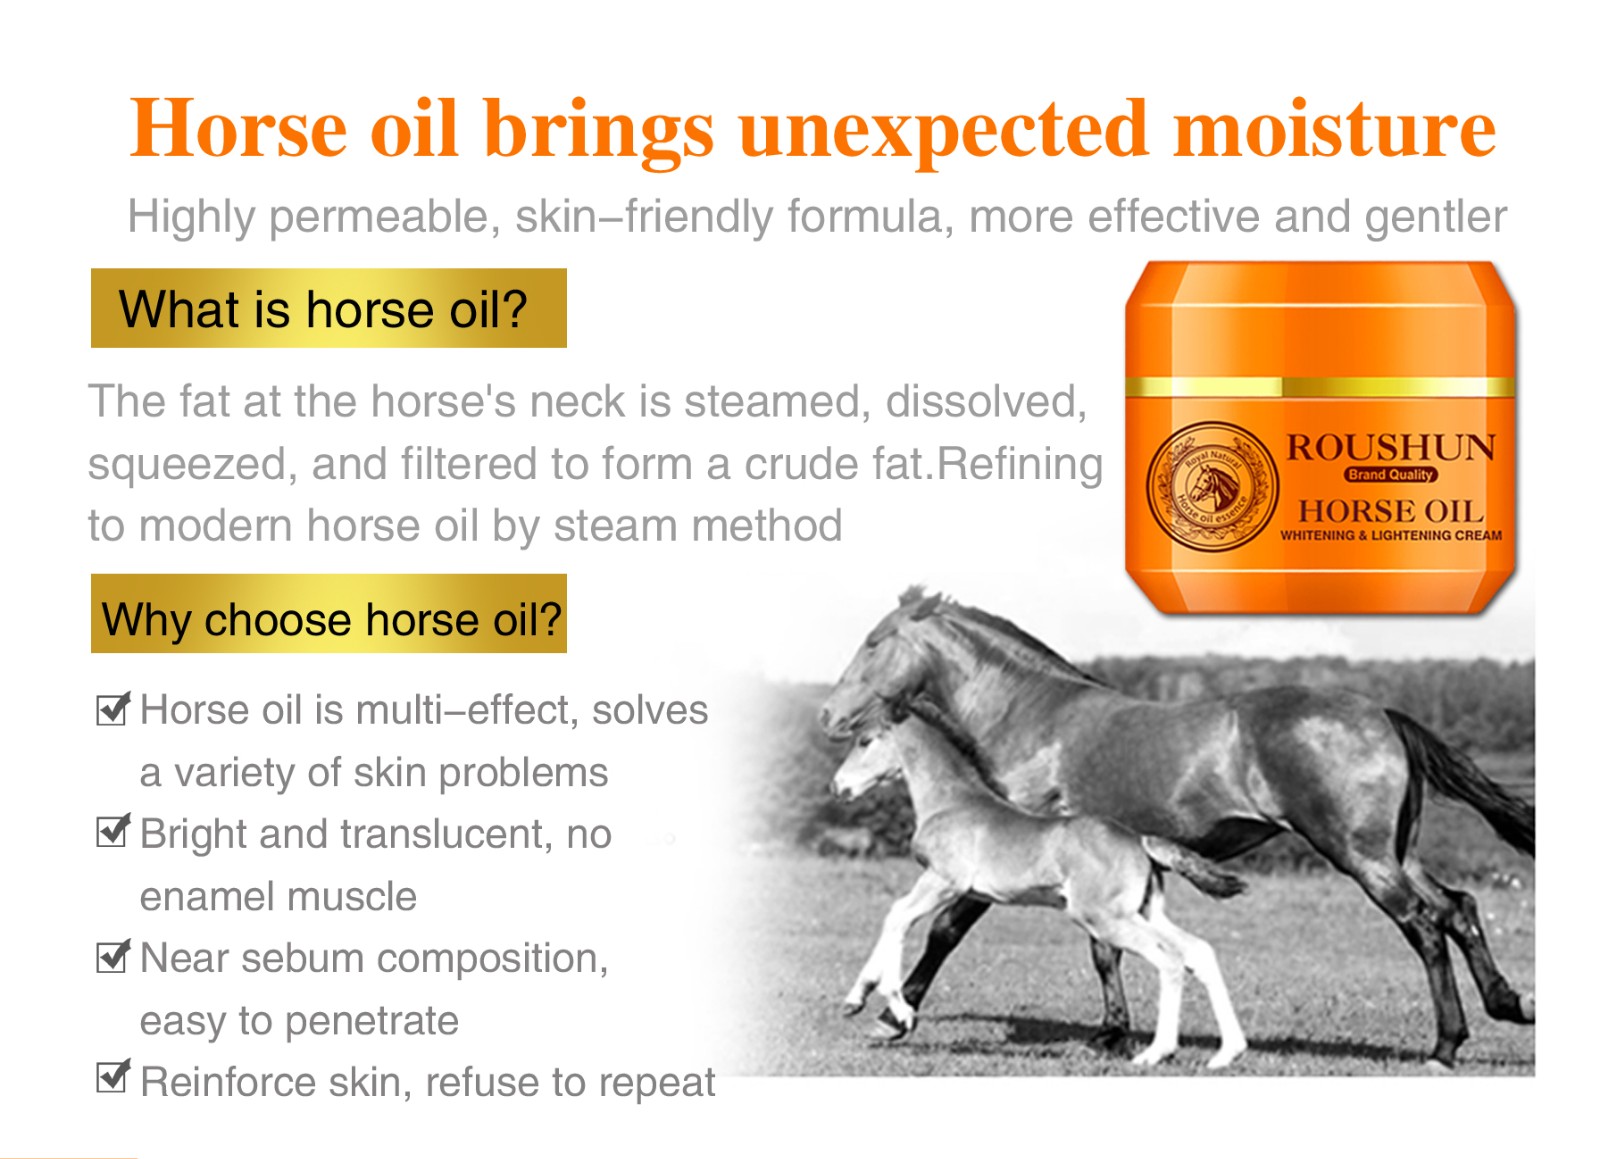 Roushun horse oil whitening  lighting moisture smooth soften 